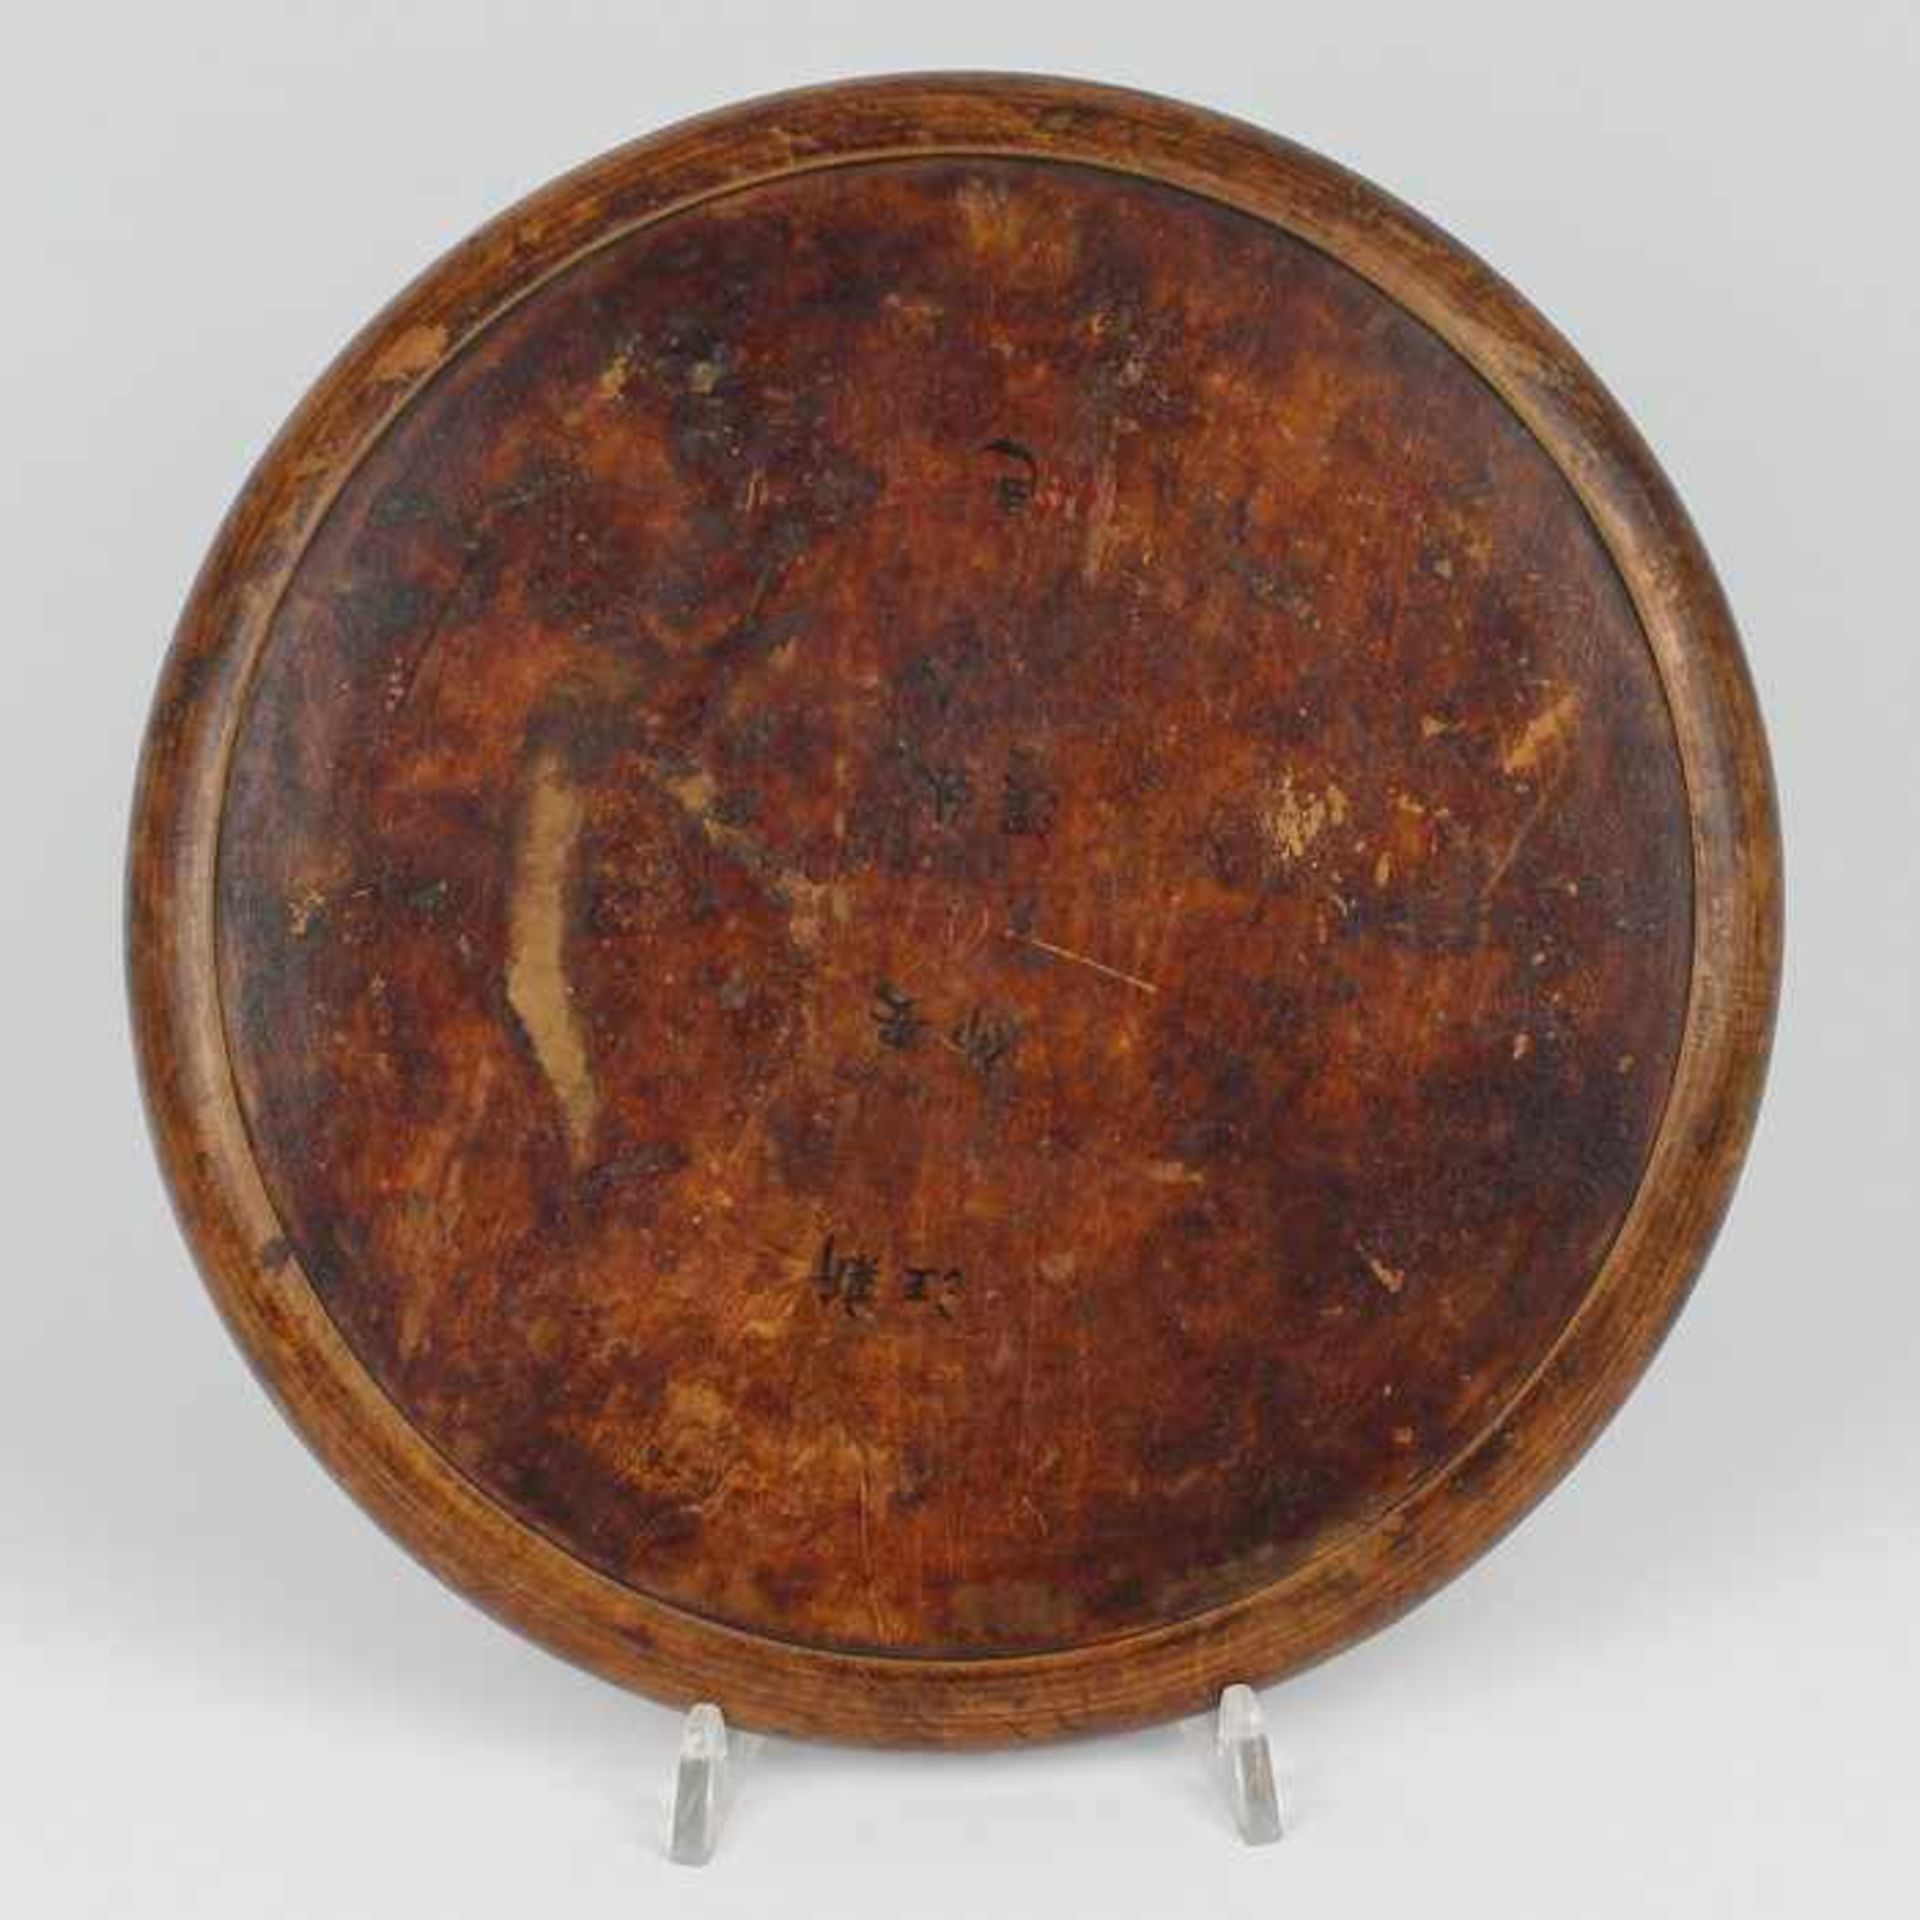 Kompass - China20.Jh., runde Holzplatte, umlaufend m. chinesischen Schriftzeichen verziert, mittig - Bild 3 aus 3